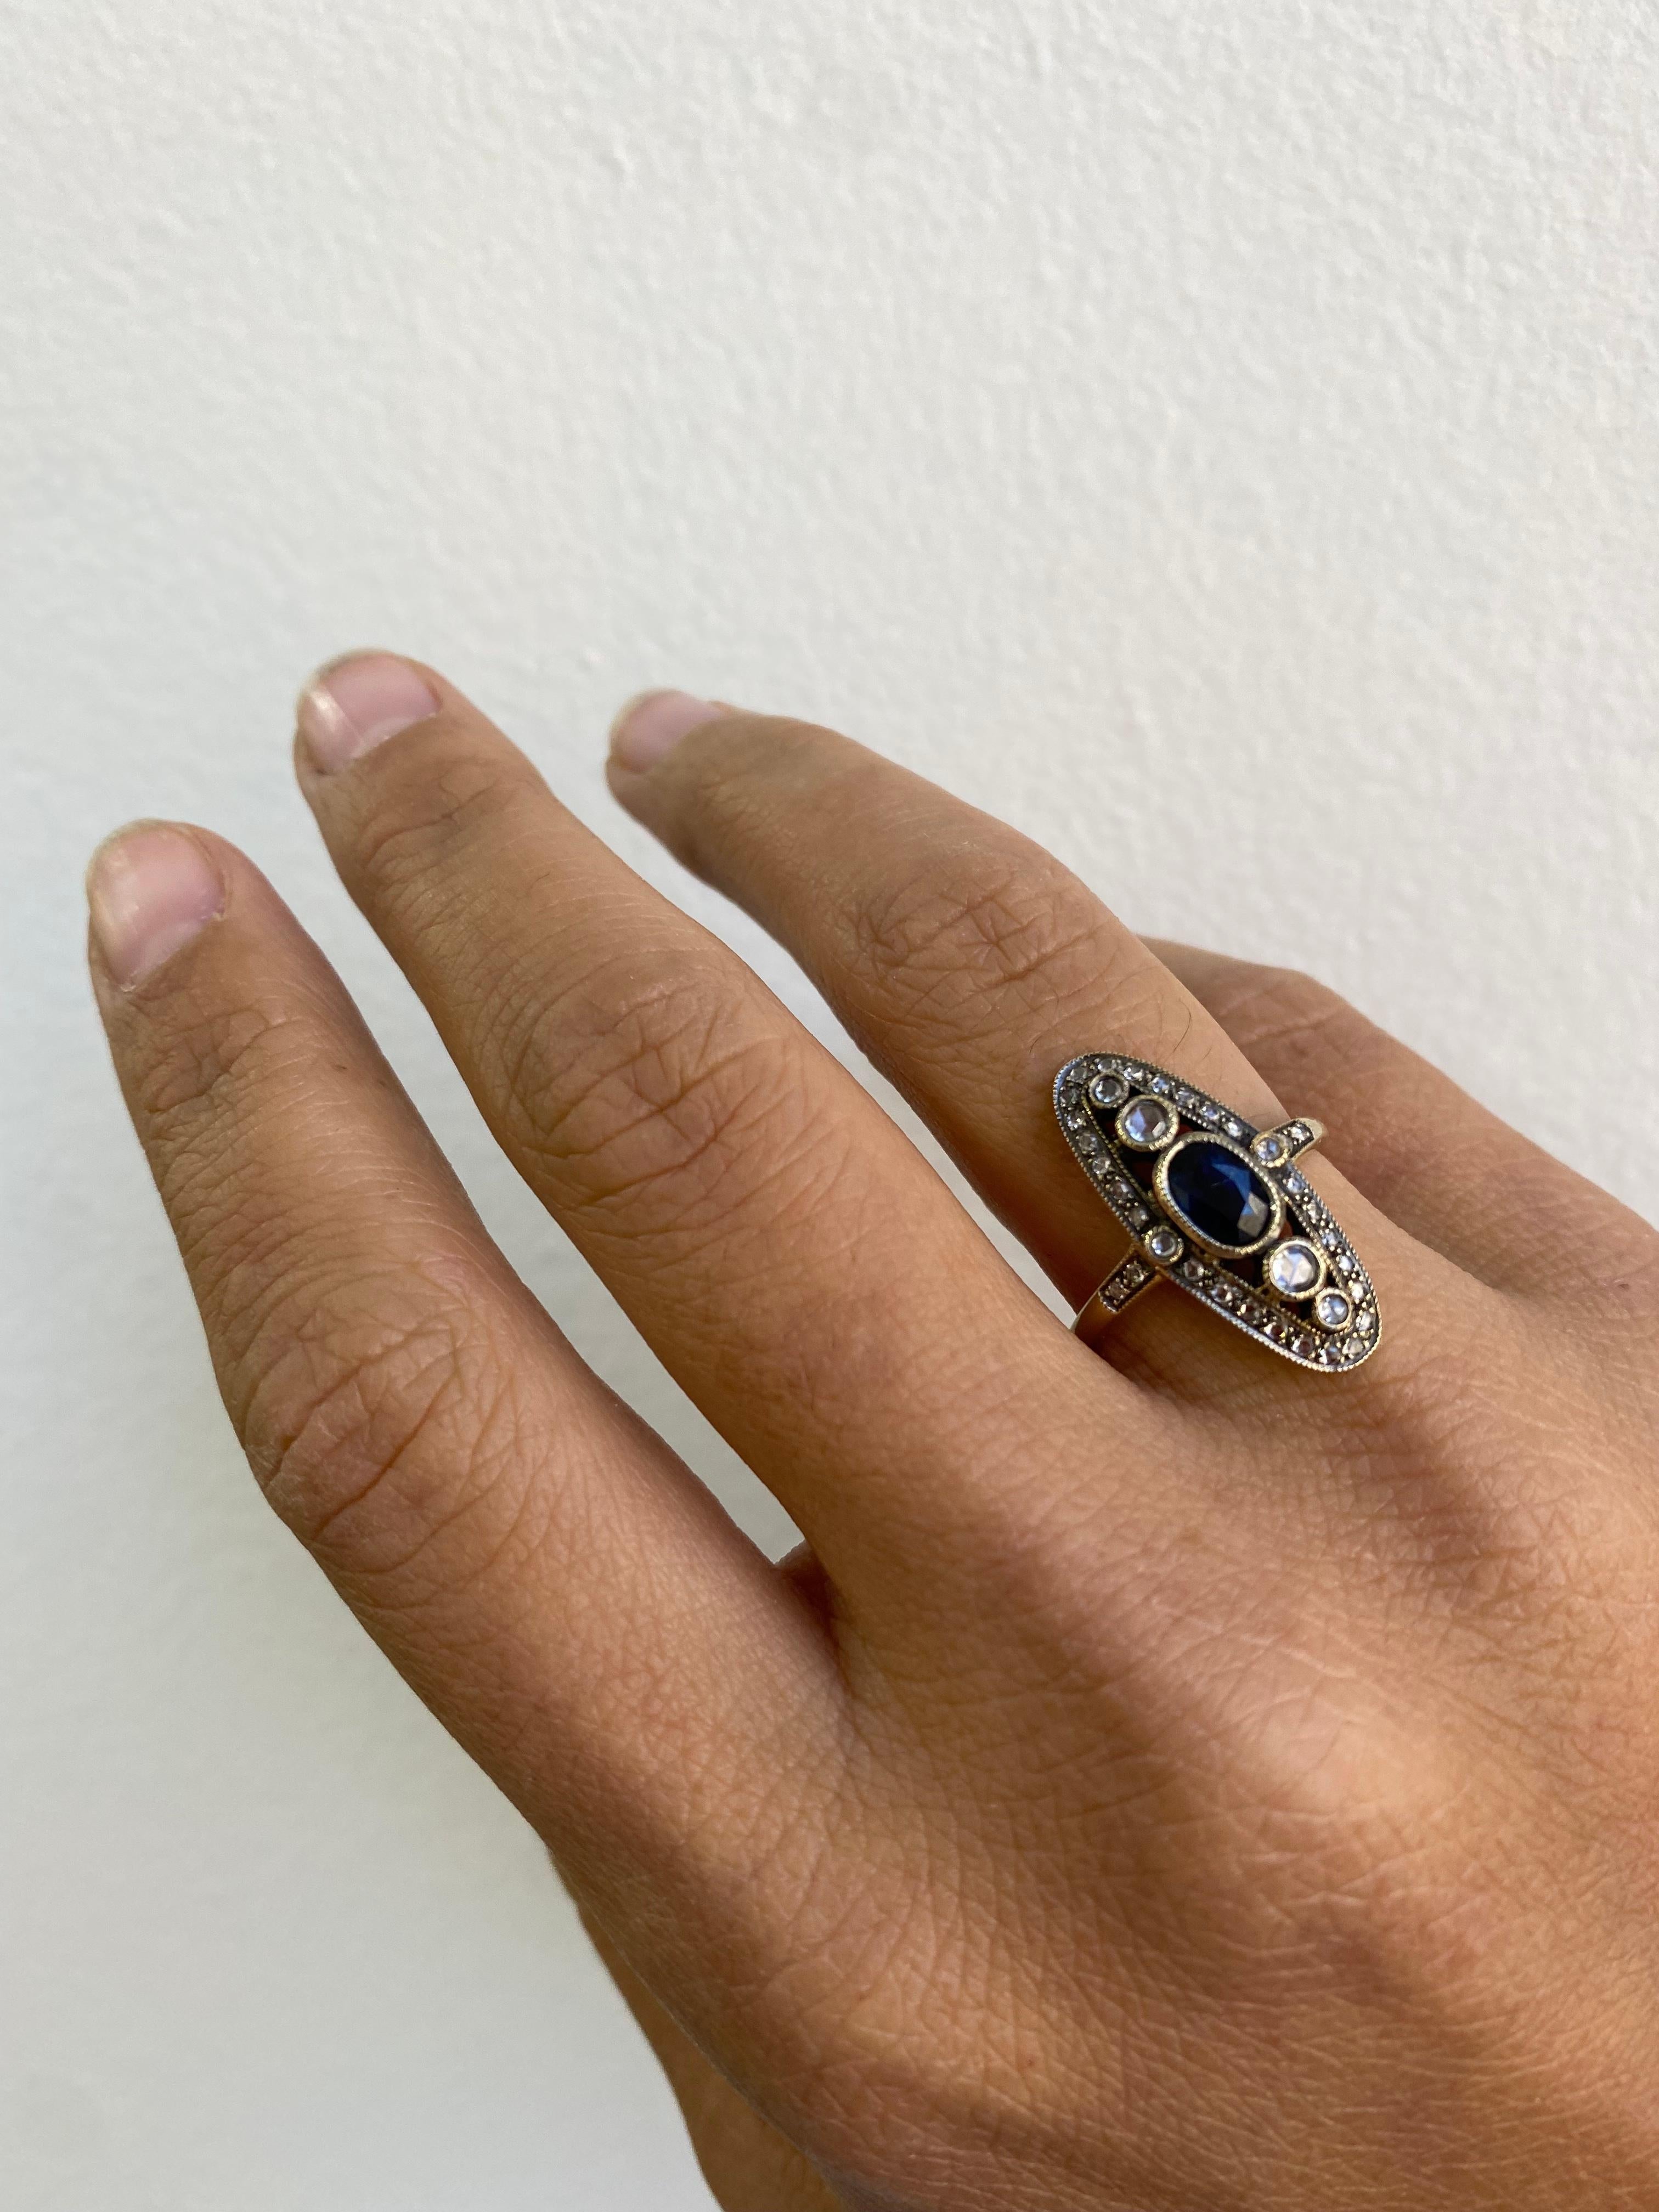 Langer ovaler Ring mit blauem Saphir und Diamanten 

Dieses elegante Art-Déco-Revival zeichnet sich durch einen ovalen blauen Saphir von 0,75 Karat in der Mitte aus, der mit goldfarbenen Diamanten im Rosenschliff und runden Diamanten im